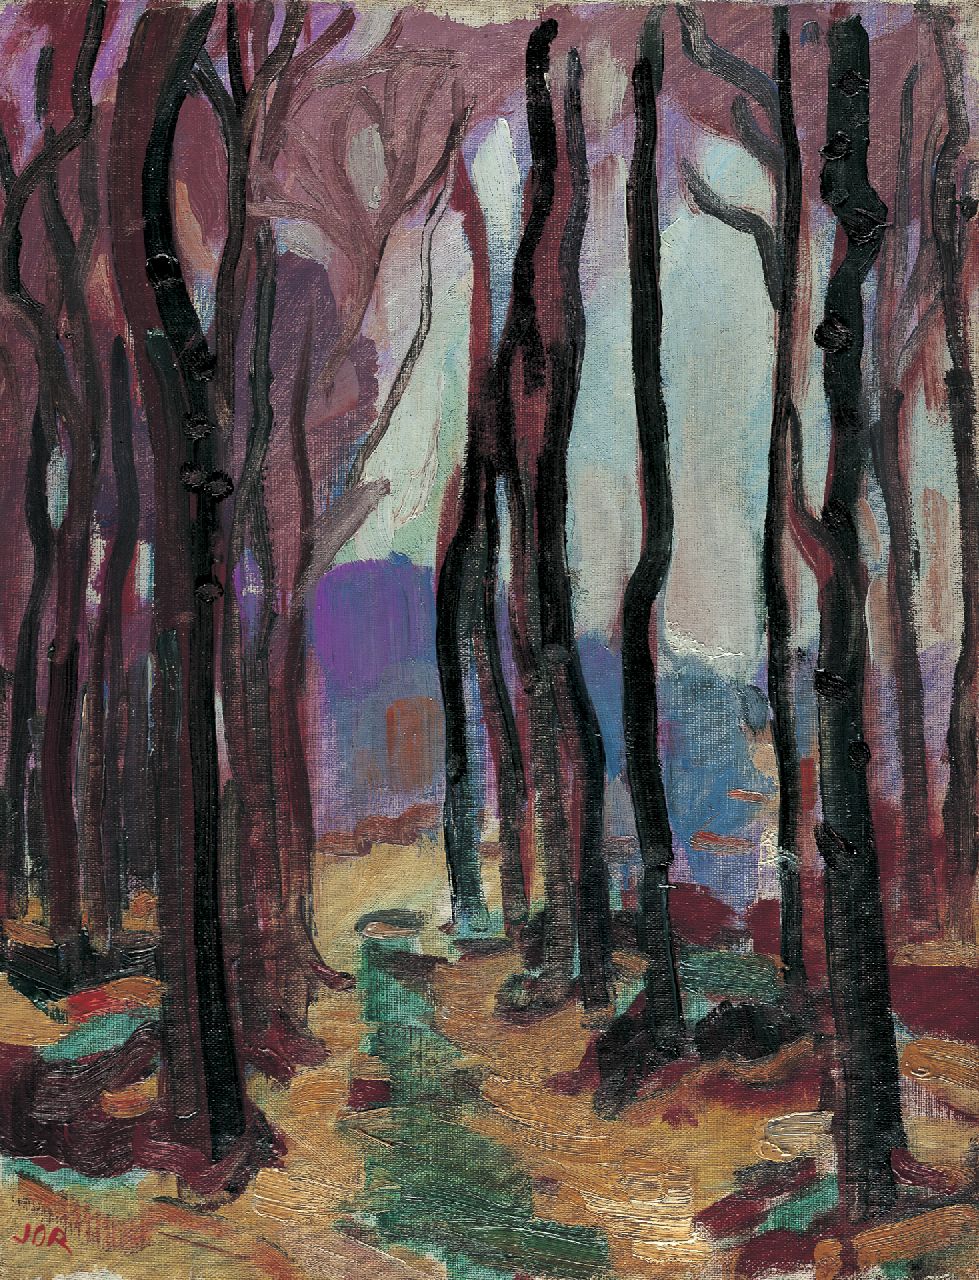 Jordens J.G.  | 'Jan' Gerrit Jordens, In het bos, olieverf op doek 42,2 x 32,5 cm, gesigneerd linksonder monogram en verso gedateerd 1930